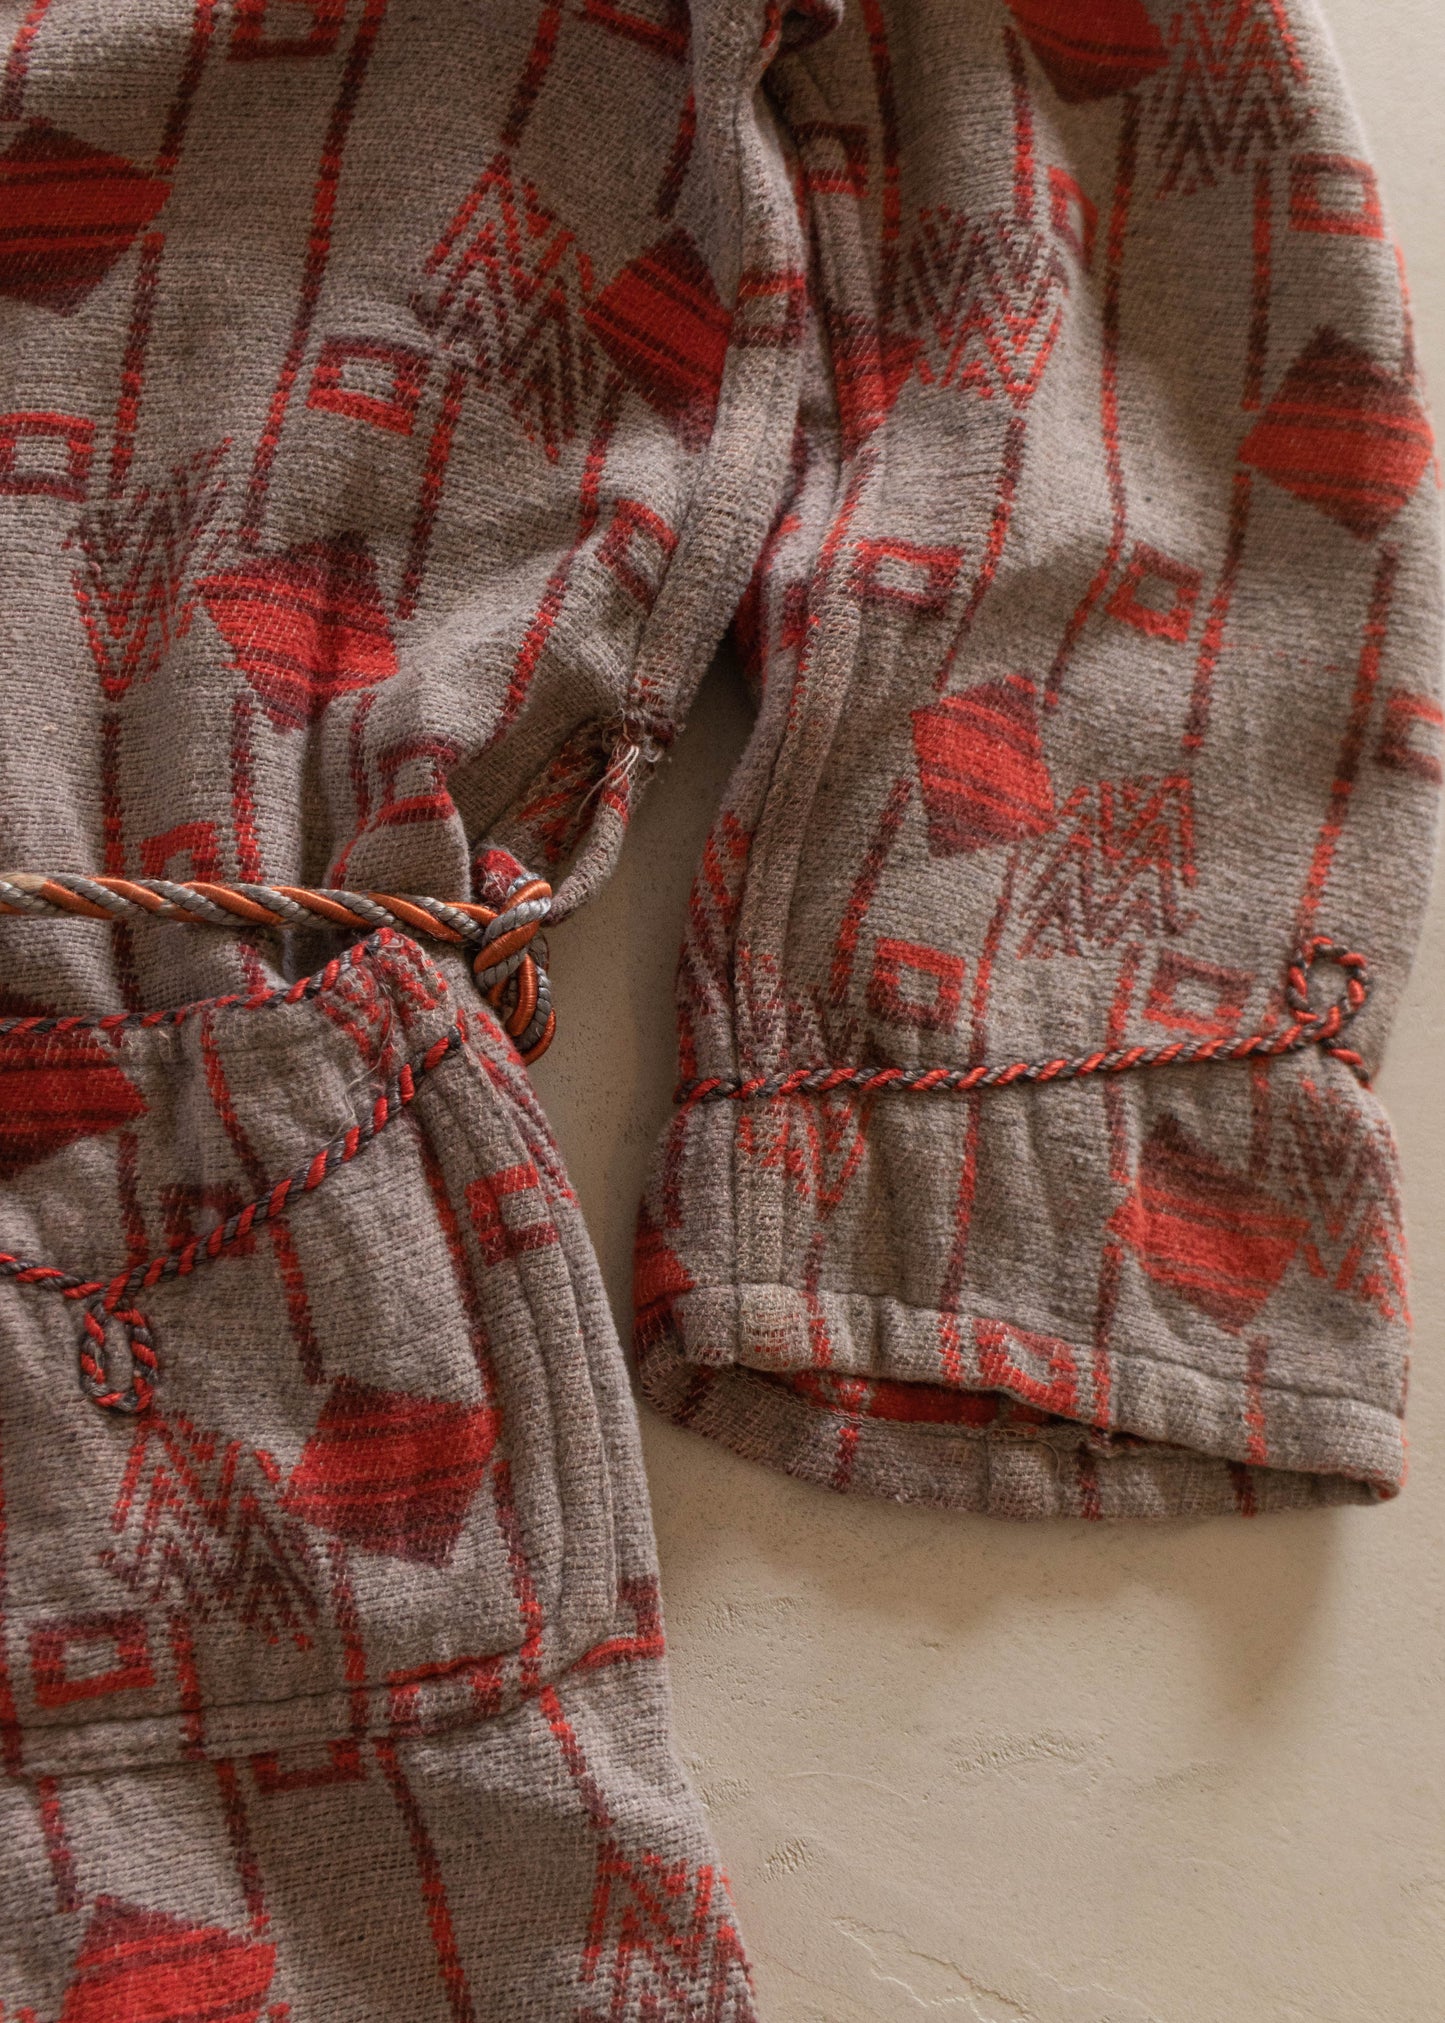 1940s Morsam Camp Blanket House Coat Robe Size S/M